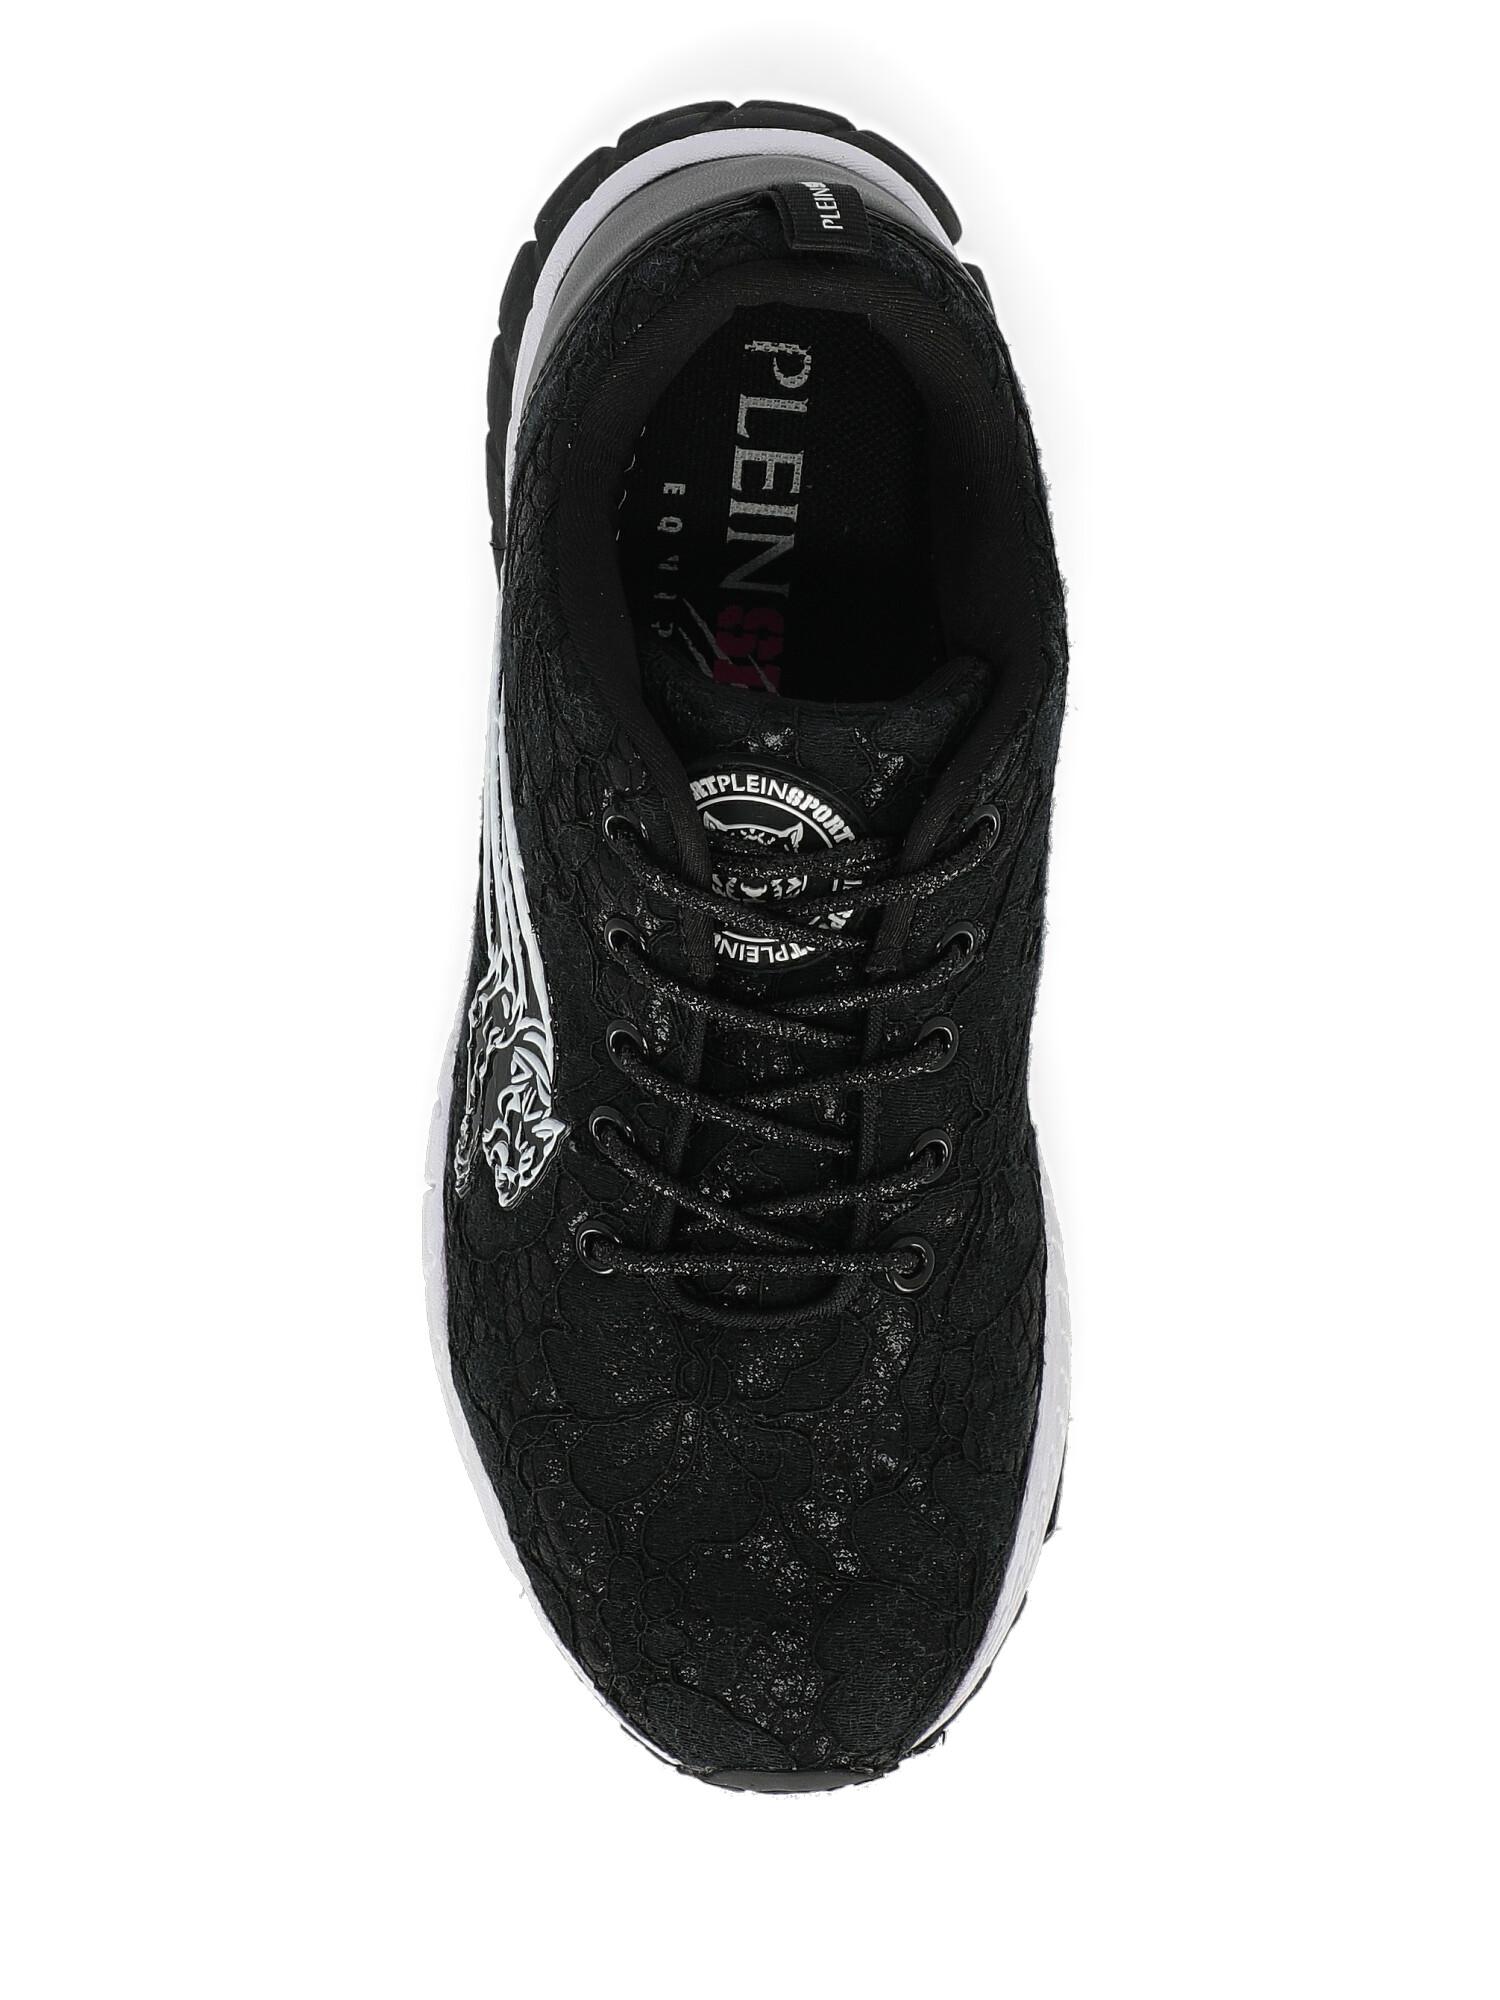 Plein Sport Woman Sneakers Black Synthetic Fibers IT 39 For Sale 2